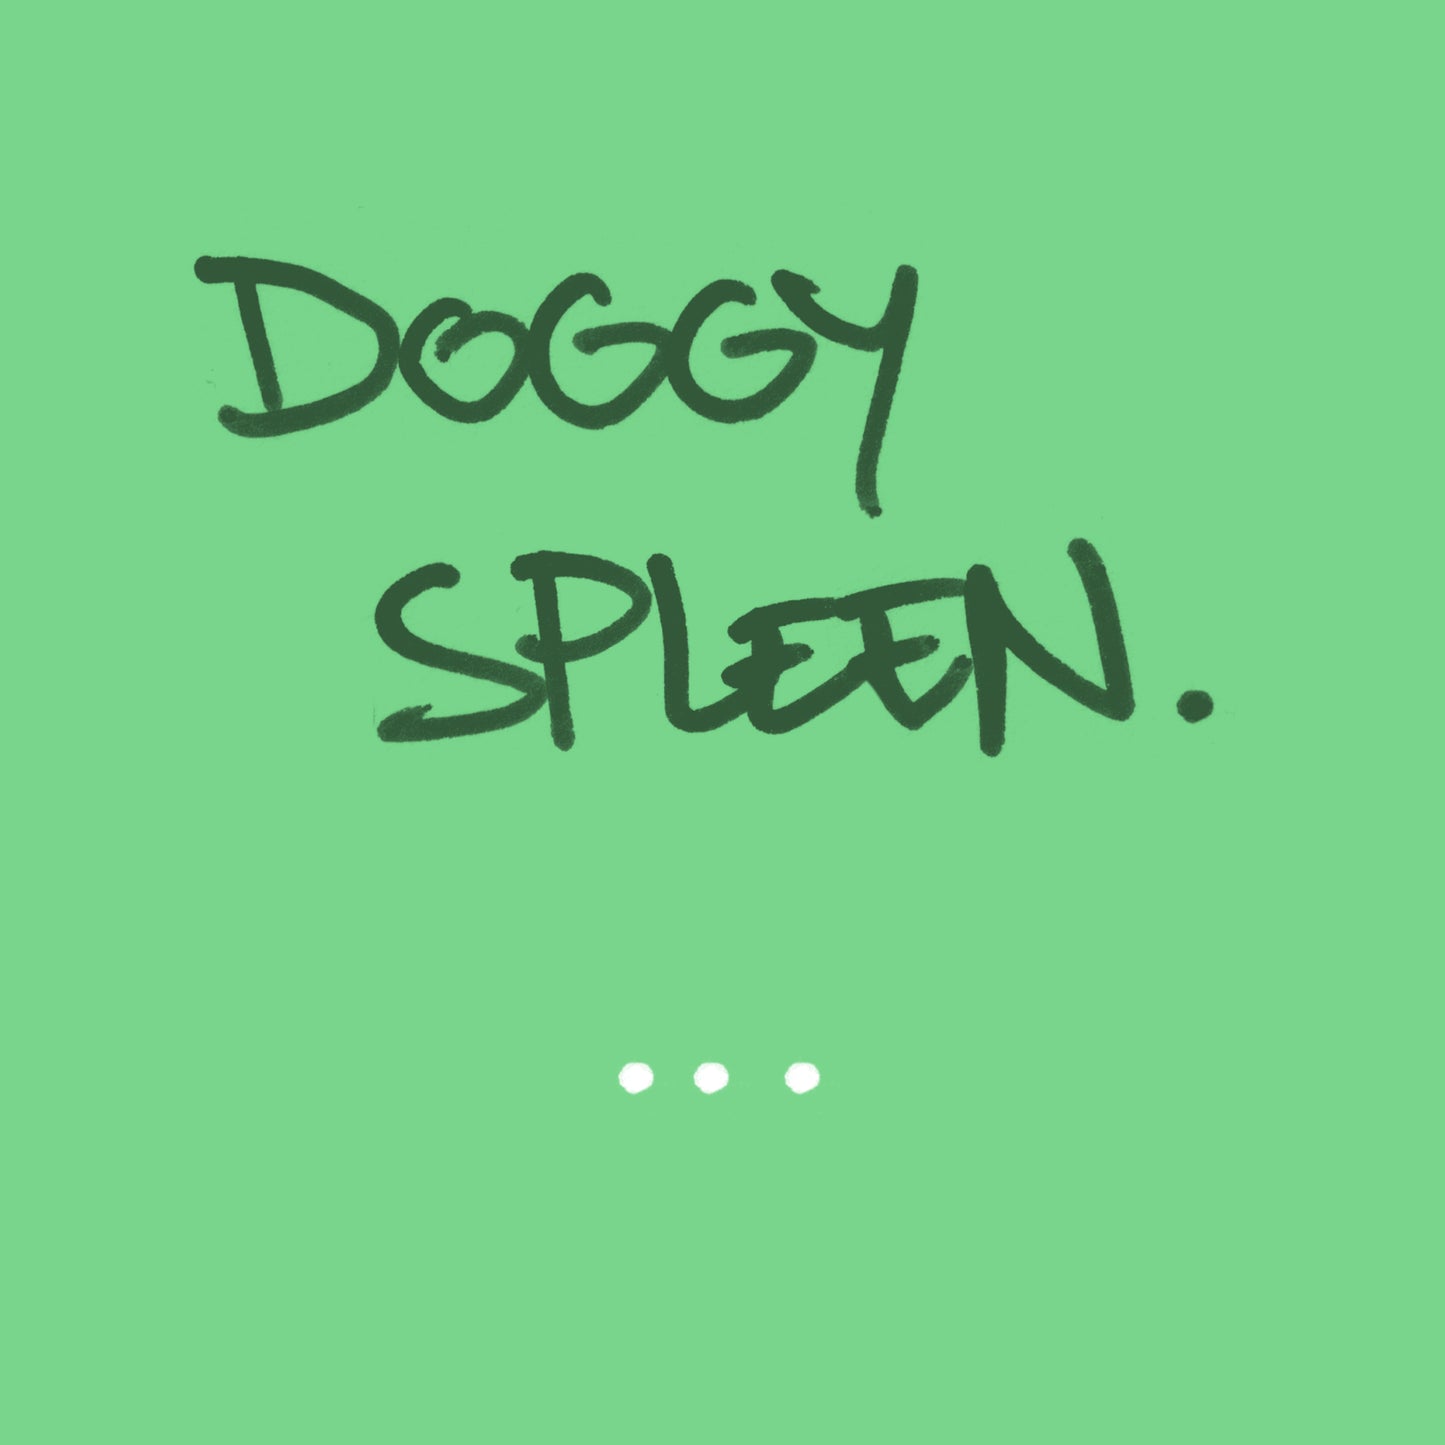 Doggy Spleen